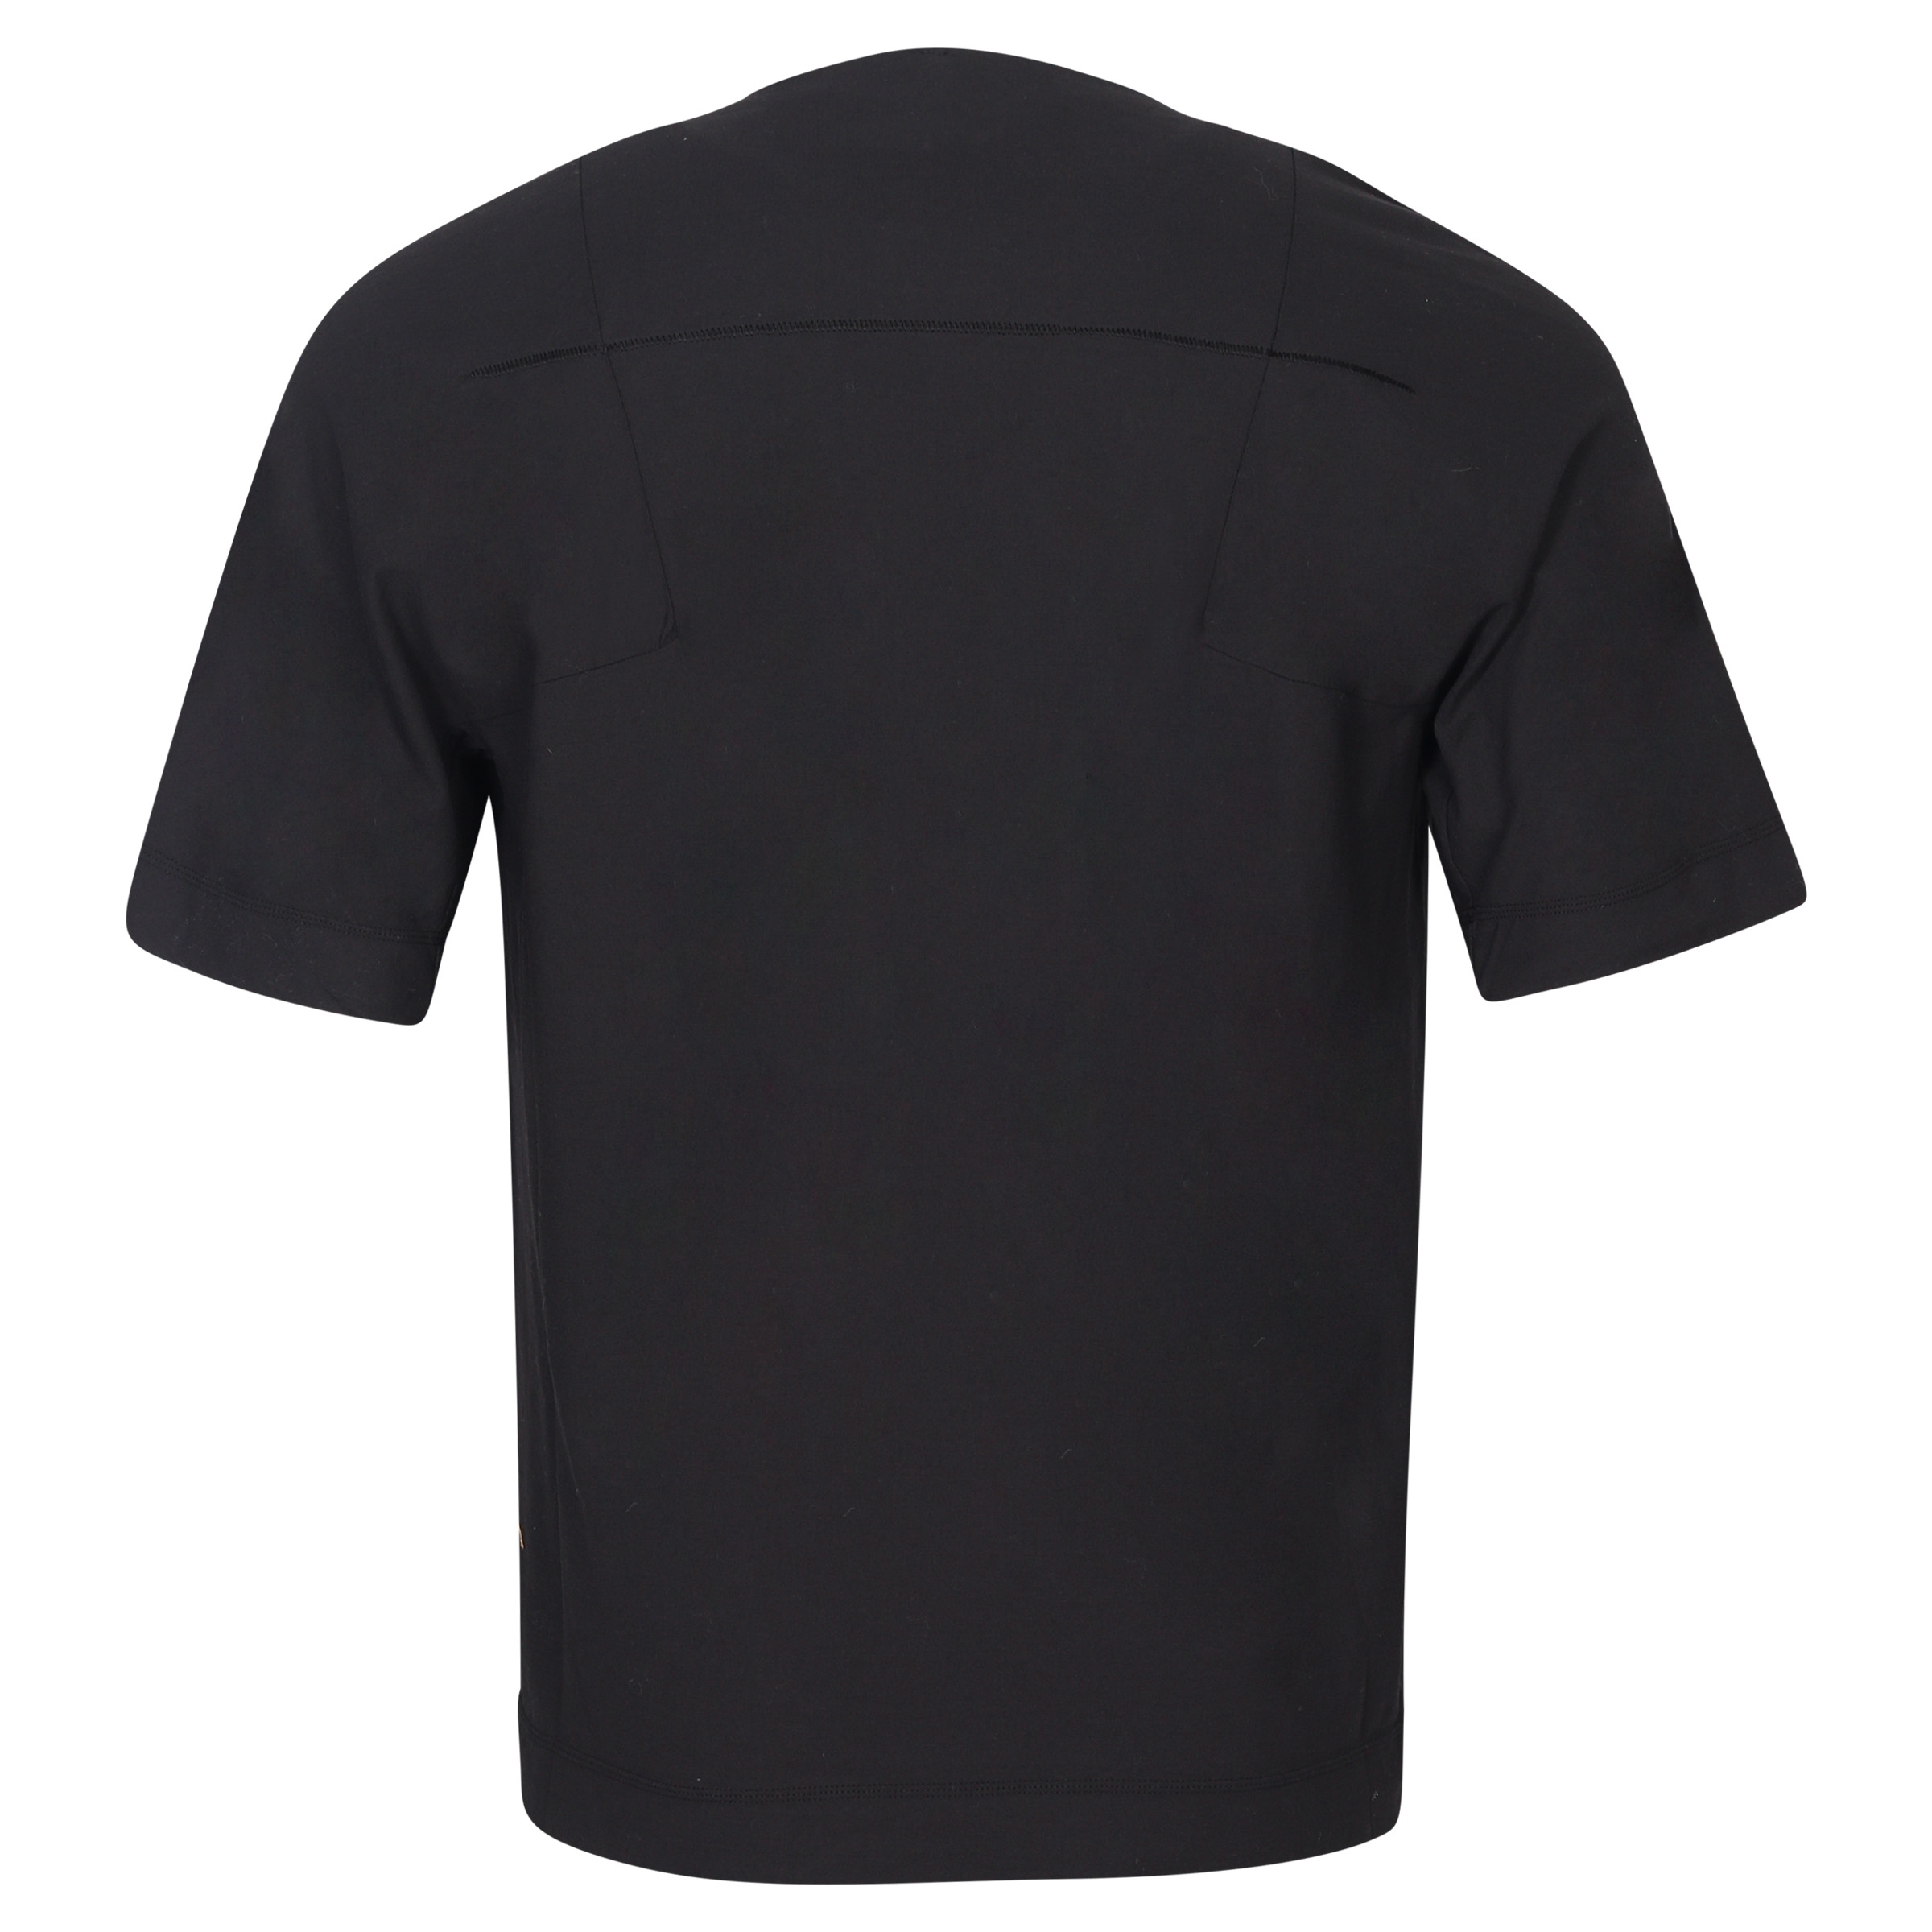 Transit Uomo Cotton T-Shirt Black